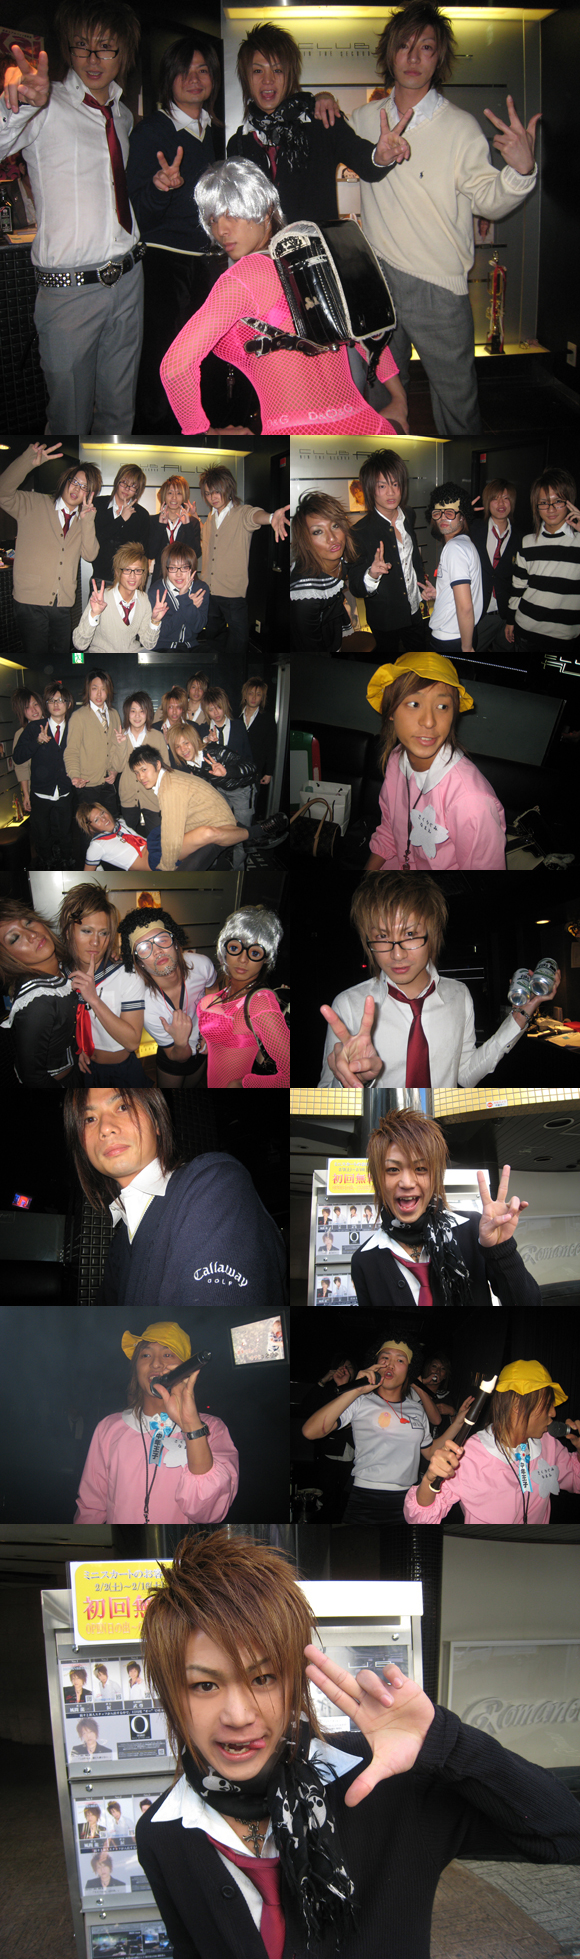 歌舞伎町のホストクラブ、ALLでバレンタインイベントが行われました。なんとみんな制服コスプレ♪